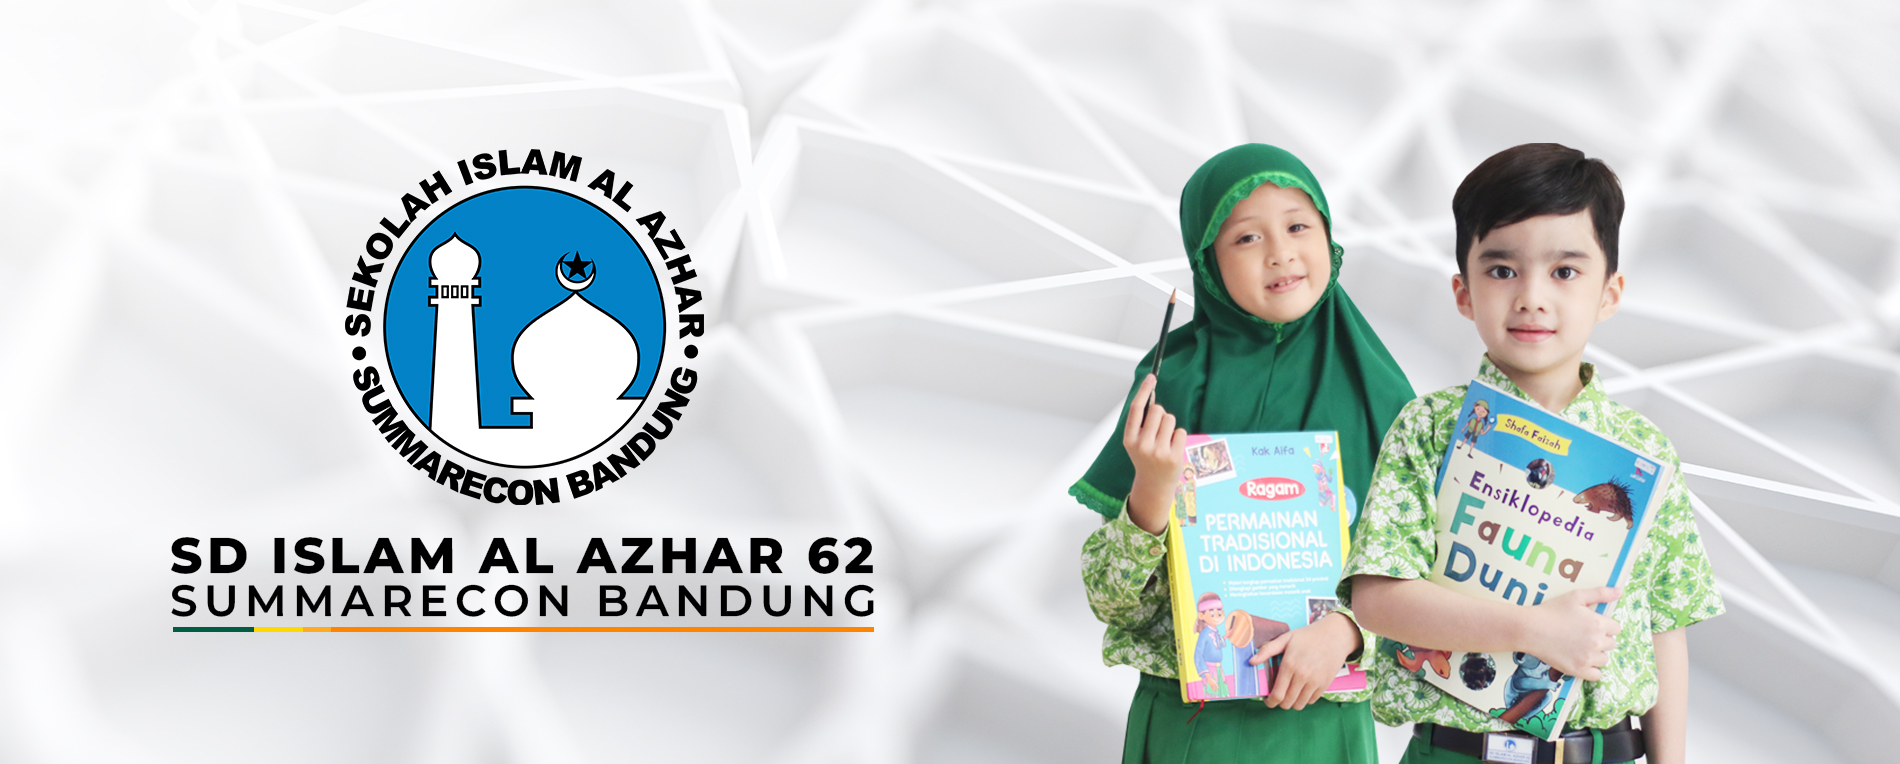 Al Azhar Summarecon Bandung SDIA 62 - Yayasan syiar Bangsa